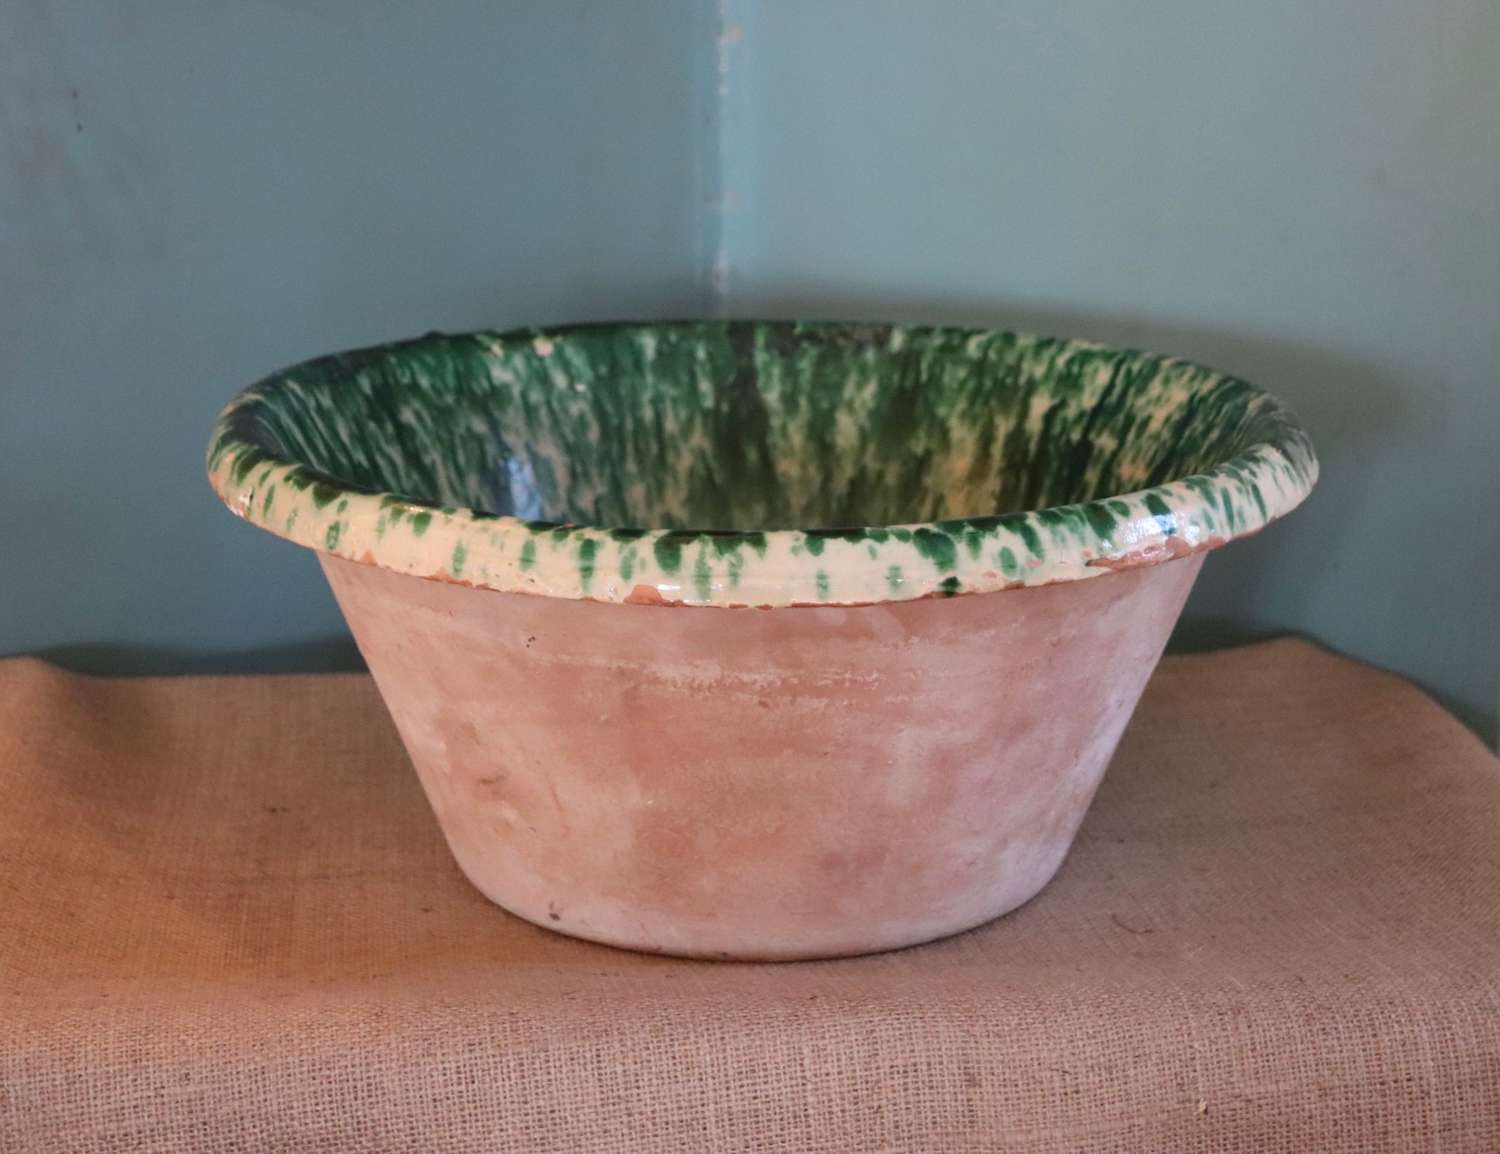 19th century passata bowl from Puglia